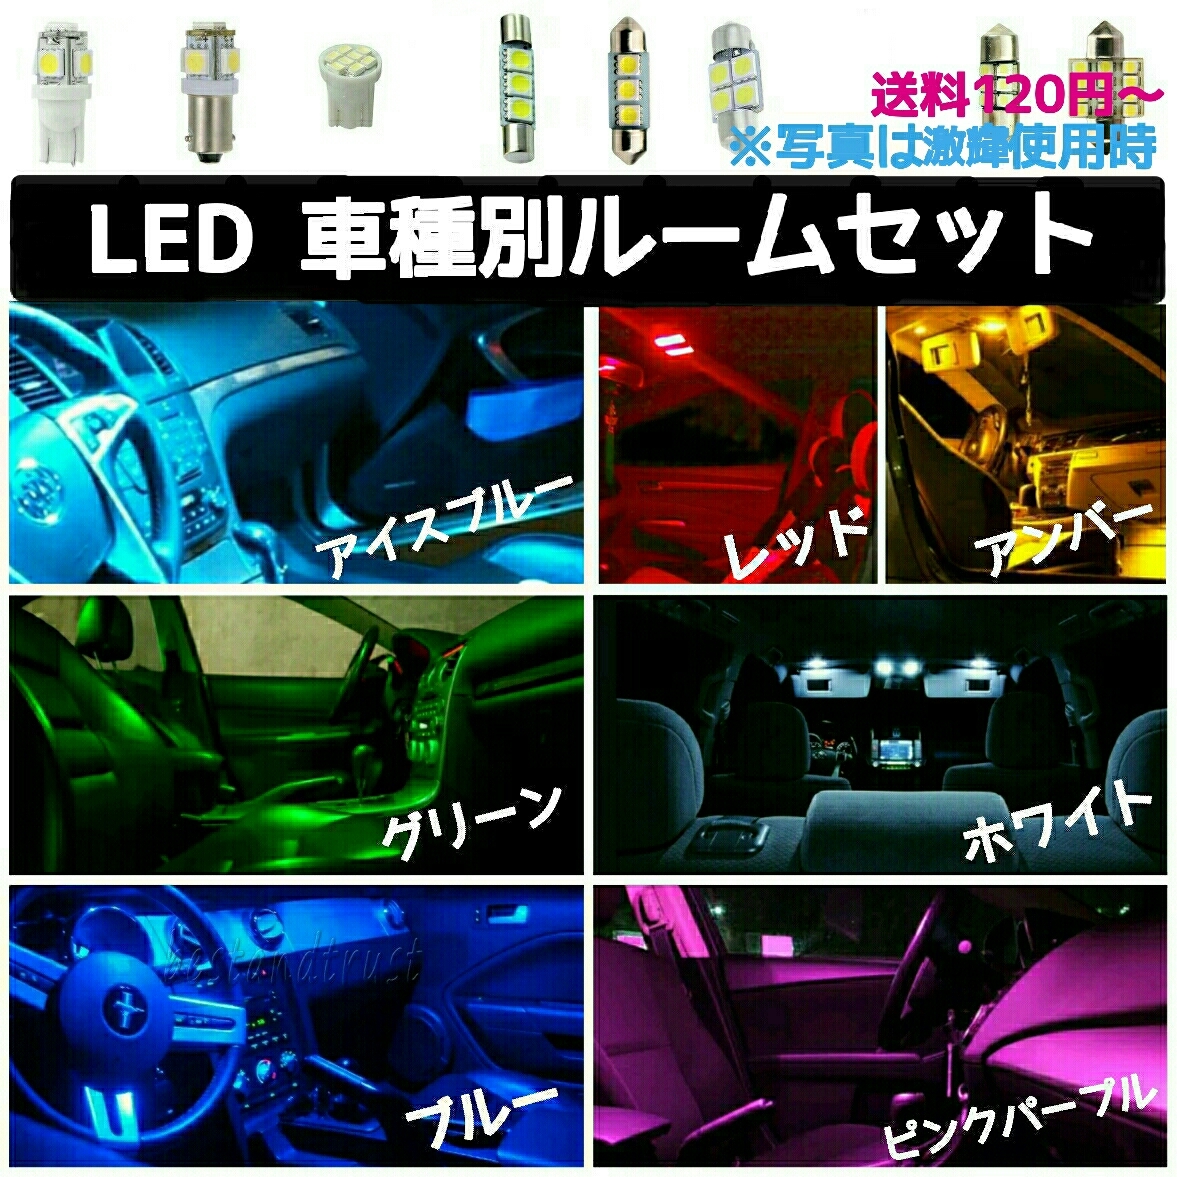 ダイハツ アトレーワゴン S320G.S330G.S321G.S331G LEDルームランプセット DAIHATSU_画像1